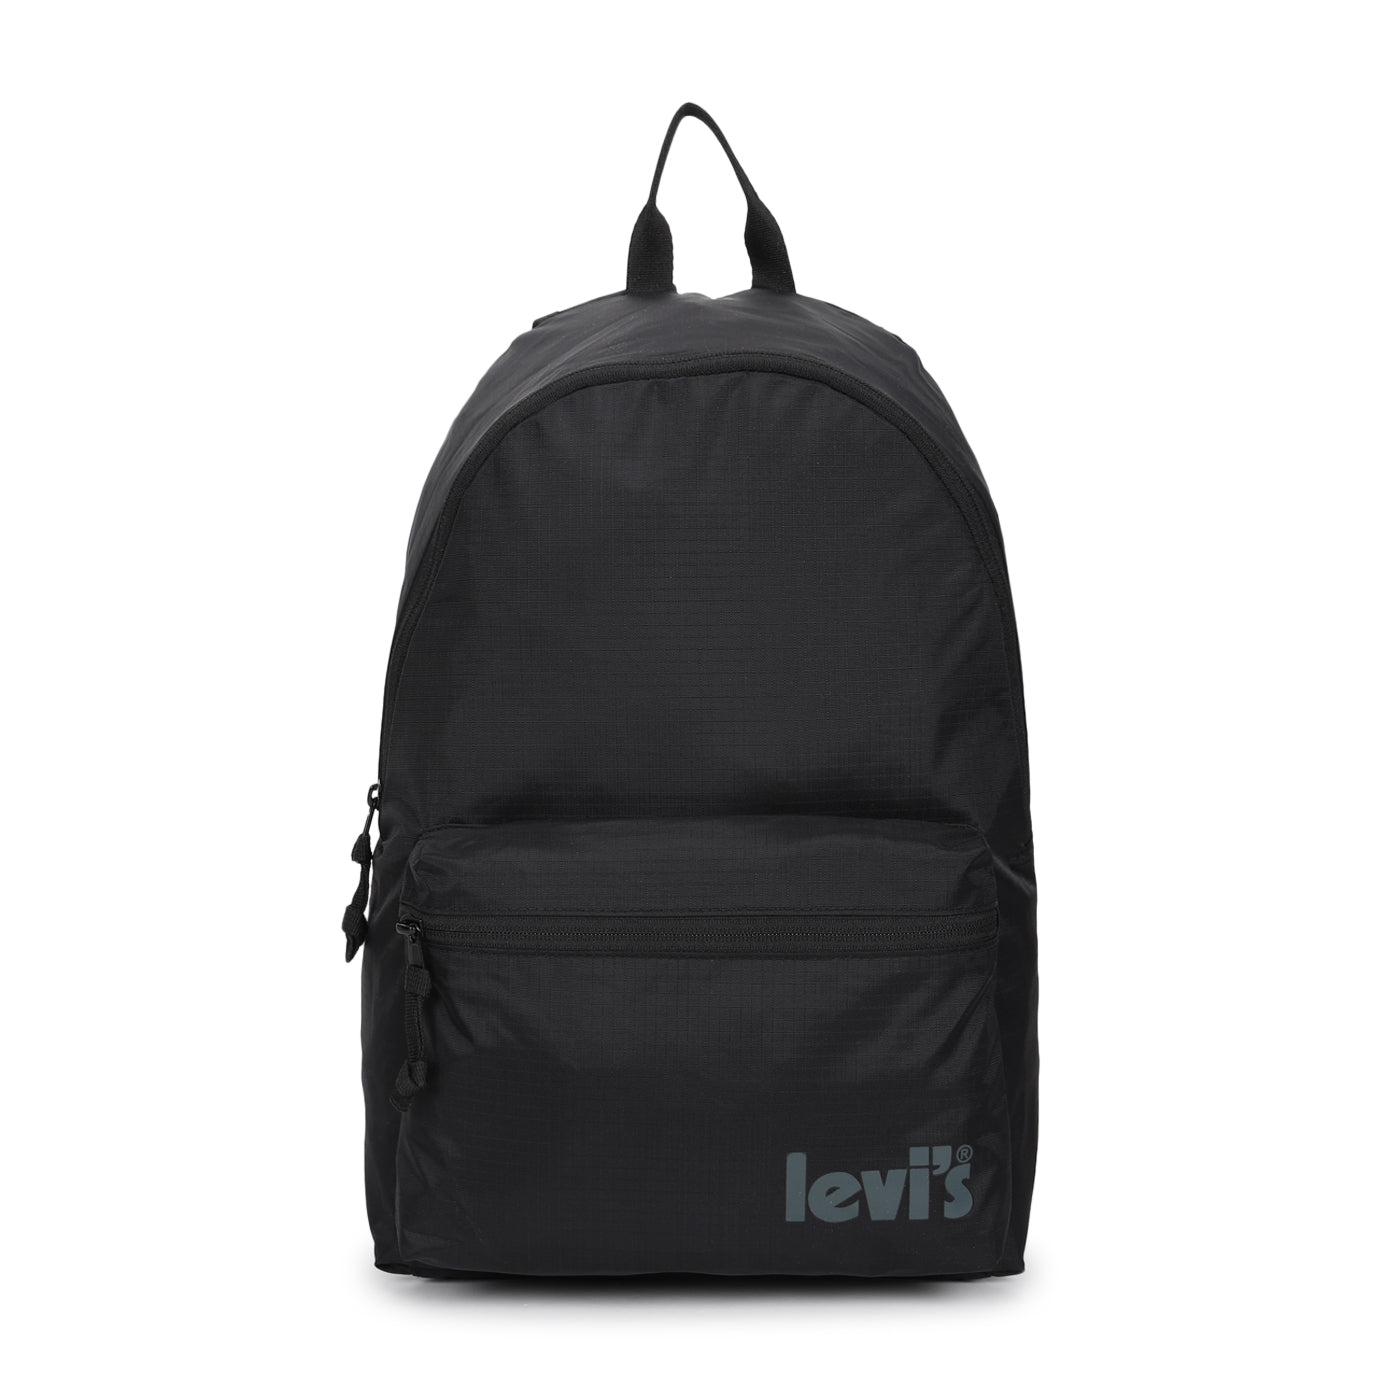 Men's Black Solid Backpack